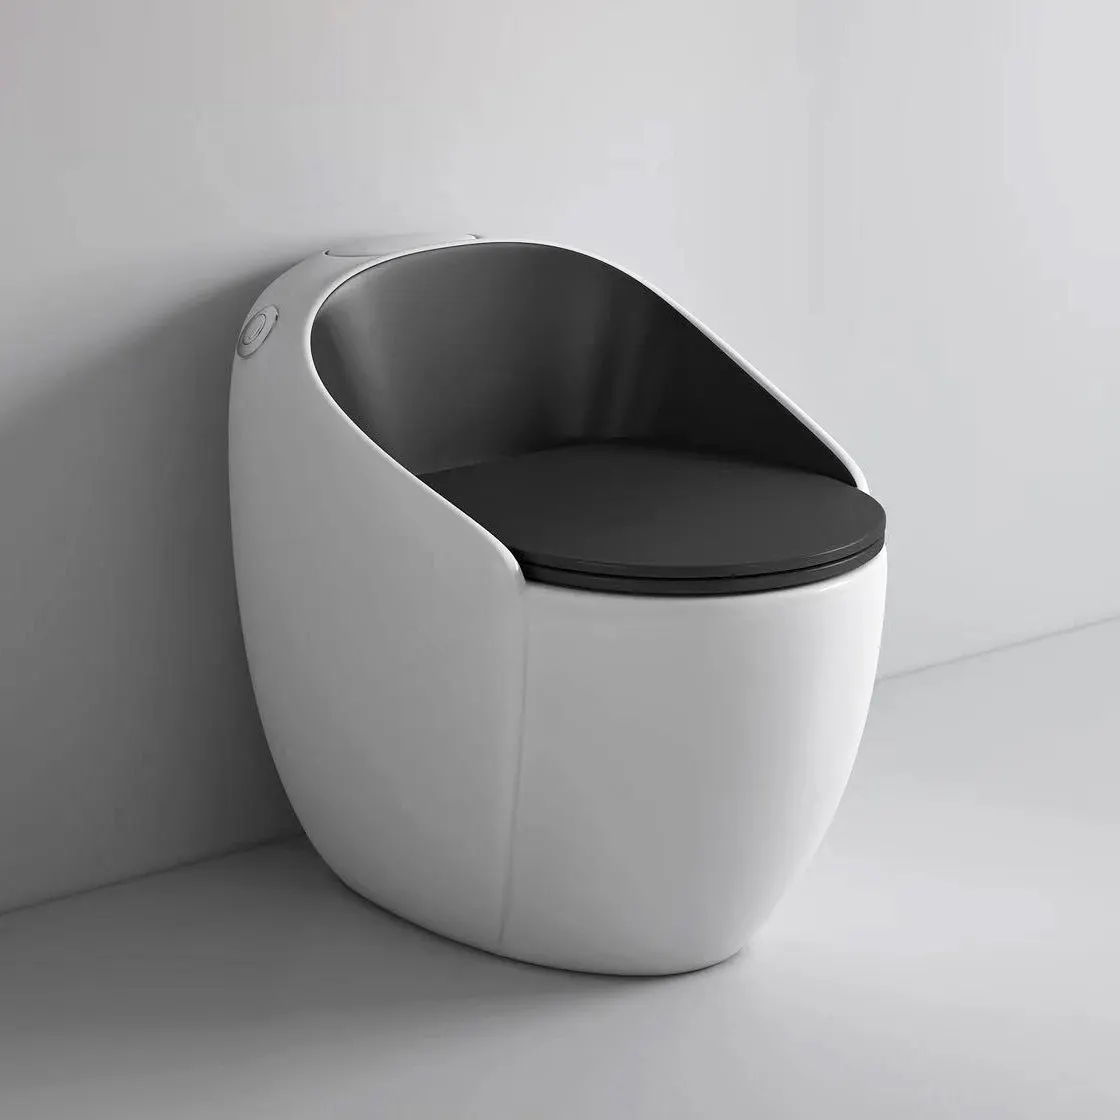 Armadilha para banheiro tipo ovo, modelo moderno, cor preta e branca, peça única, em formato de ovo, cerâmica, wc, vaso sanitário